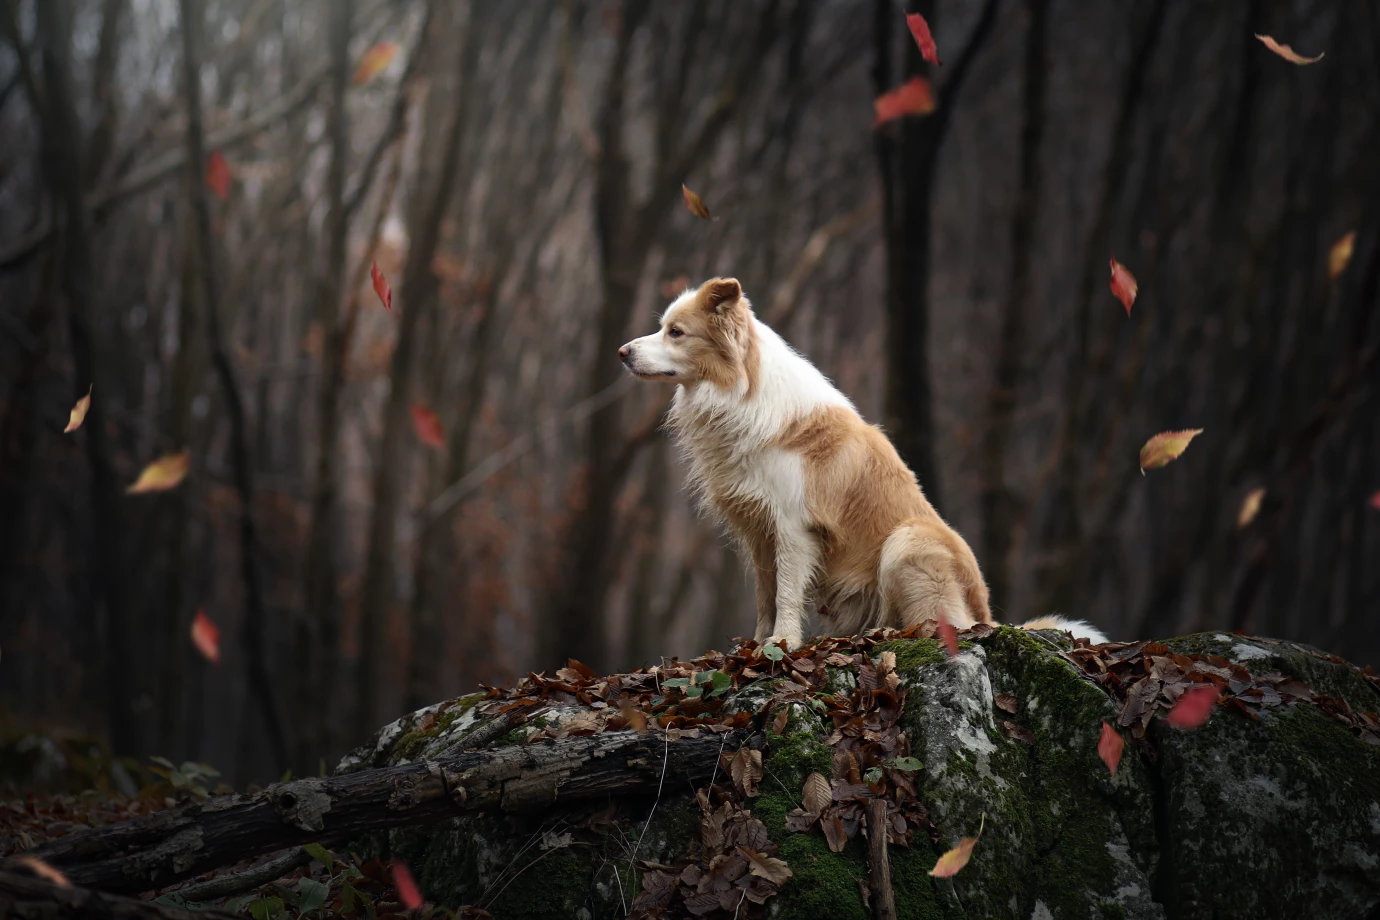 fotograf krakow polazhu portfolio zdjecia zwierzat sesja zdjeciowa konie psy koty